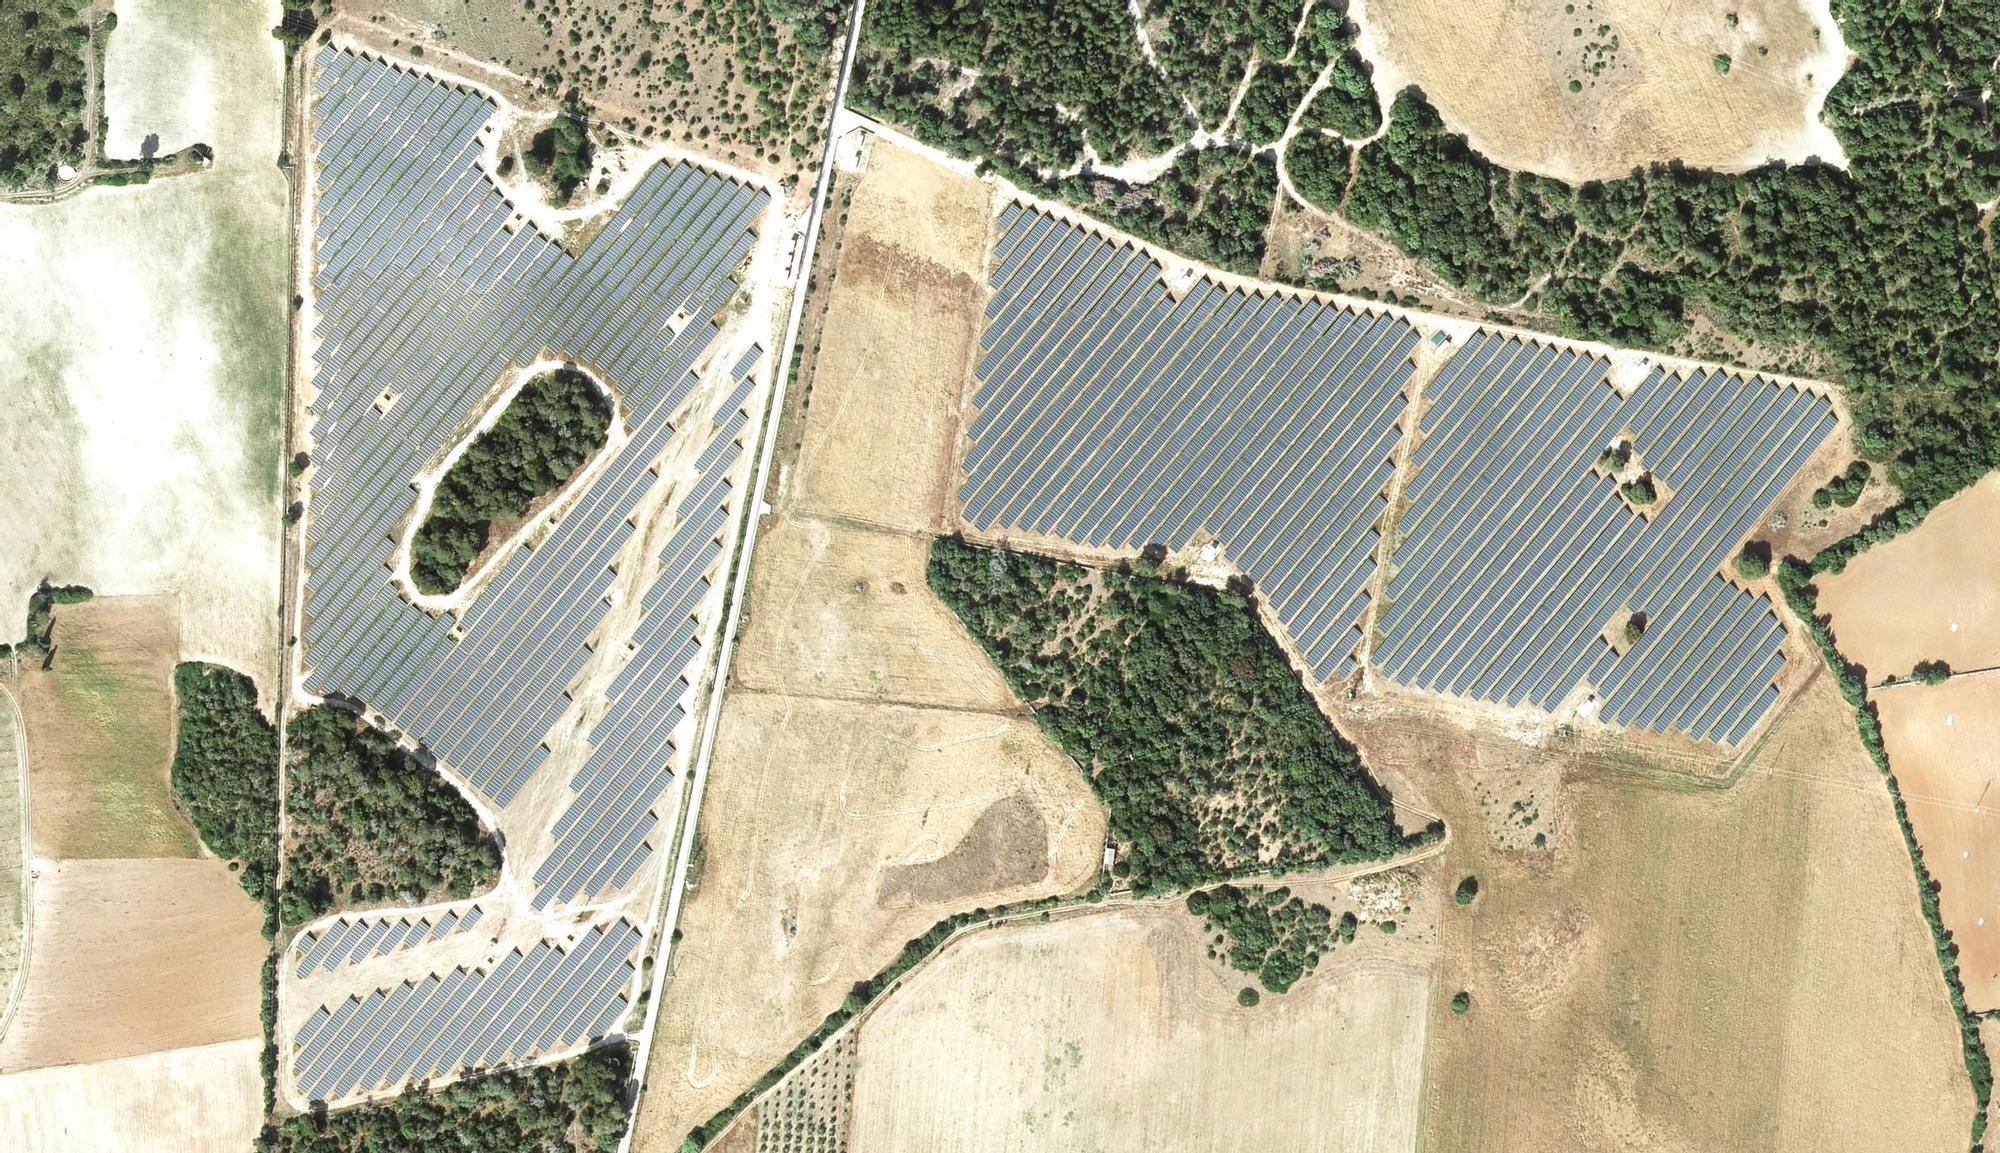 Parques fotovoltaicos | Esta es la comparativa del suelo rústico antes y después de las placas solares